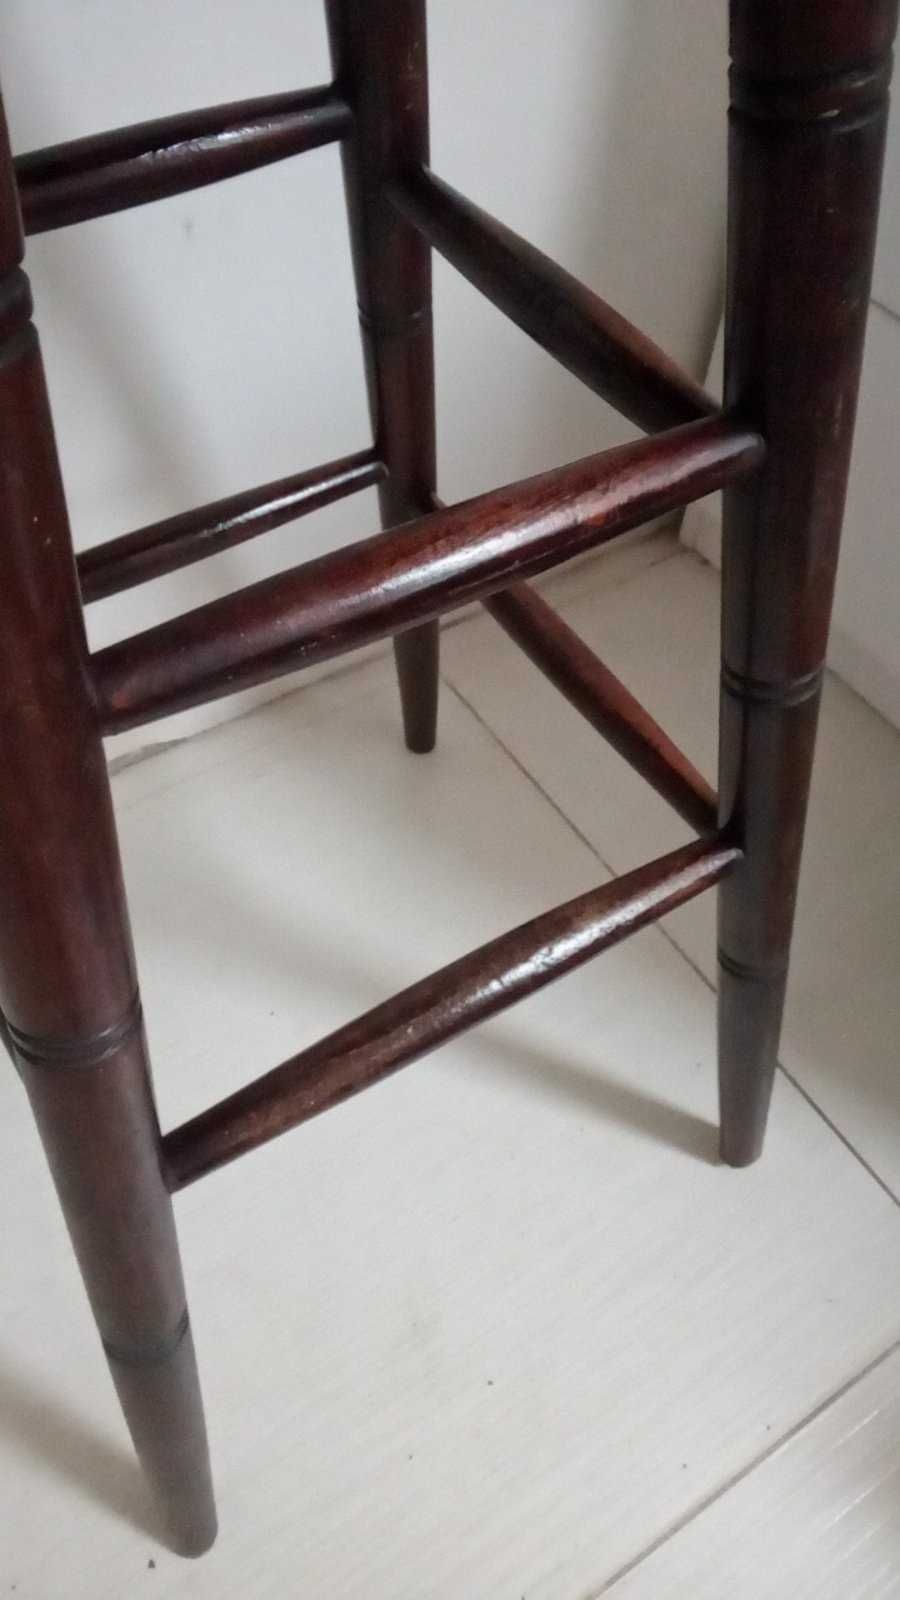 дървен бар стол със струговани  крака-тъмнокафяв